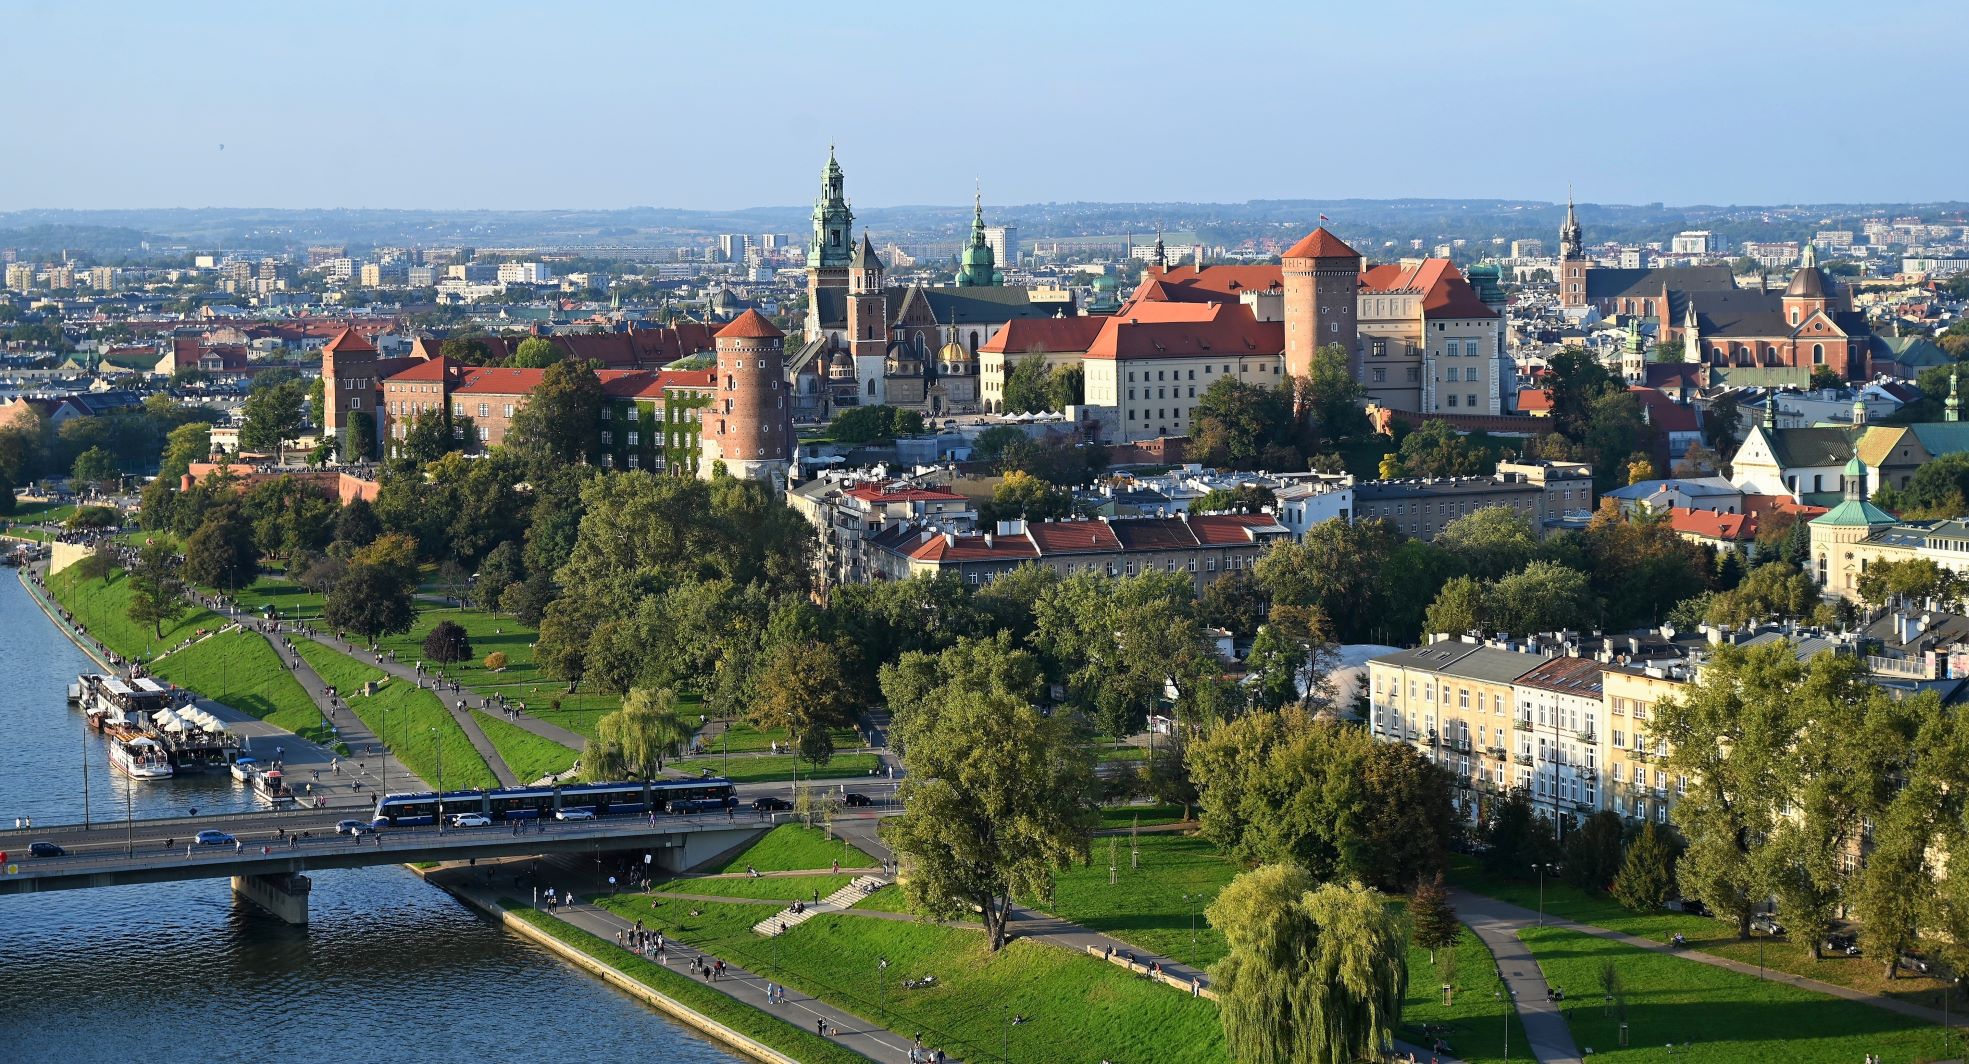 Kraków polecany zagranicznym turystom, ale nie w pierwszej kolejności